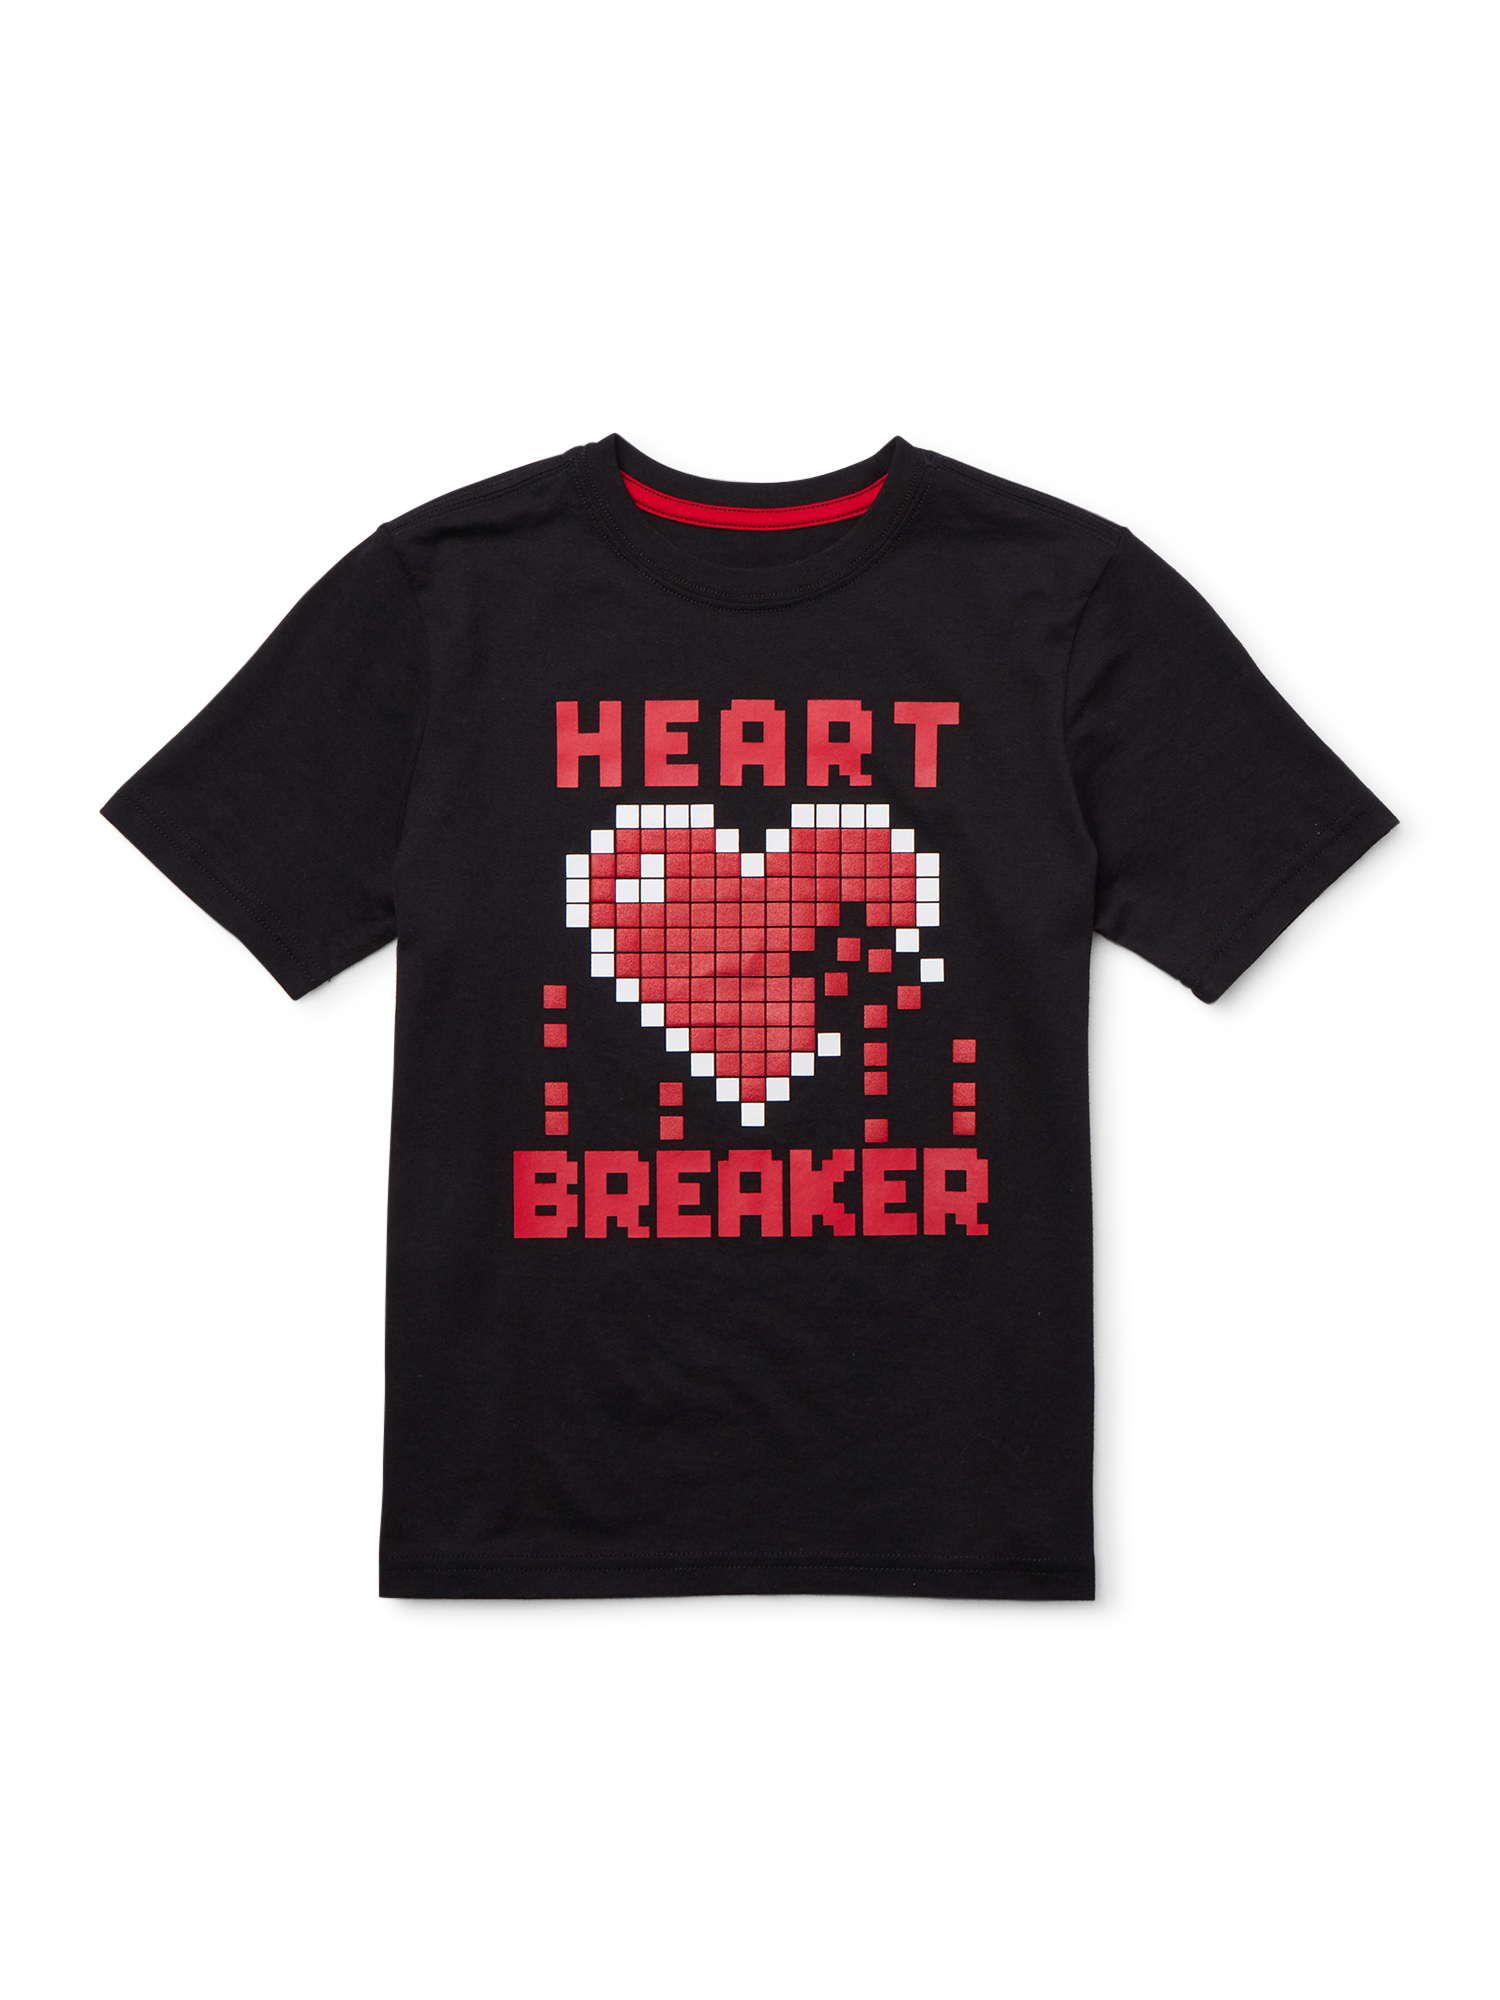 Little Heart Breaker Clearance item Cute Valentine/'s Little Heart Breaker  T shirt size 9-12 Months!